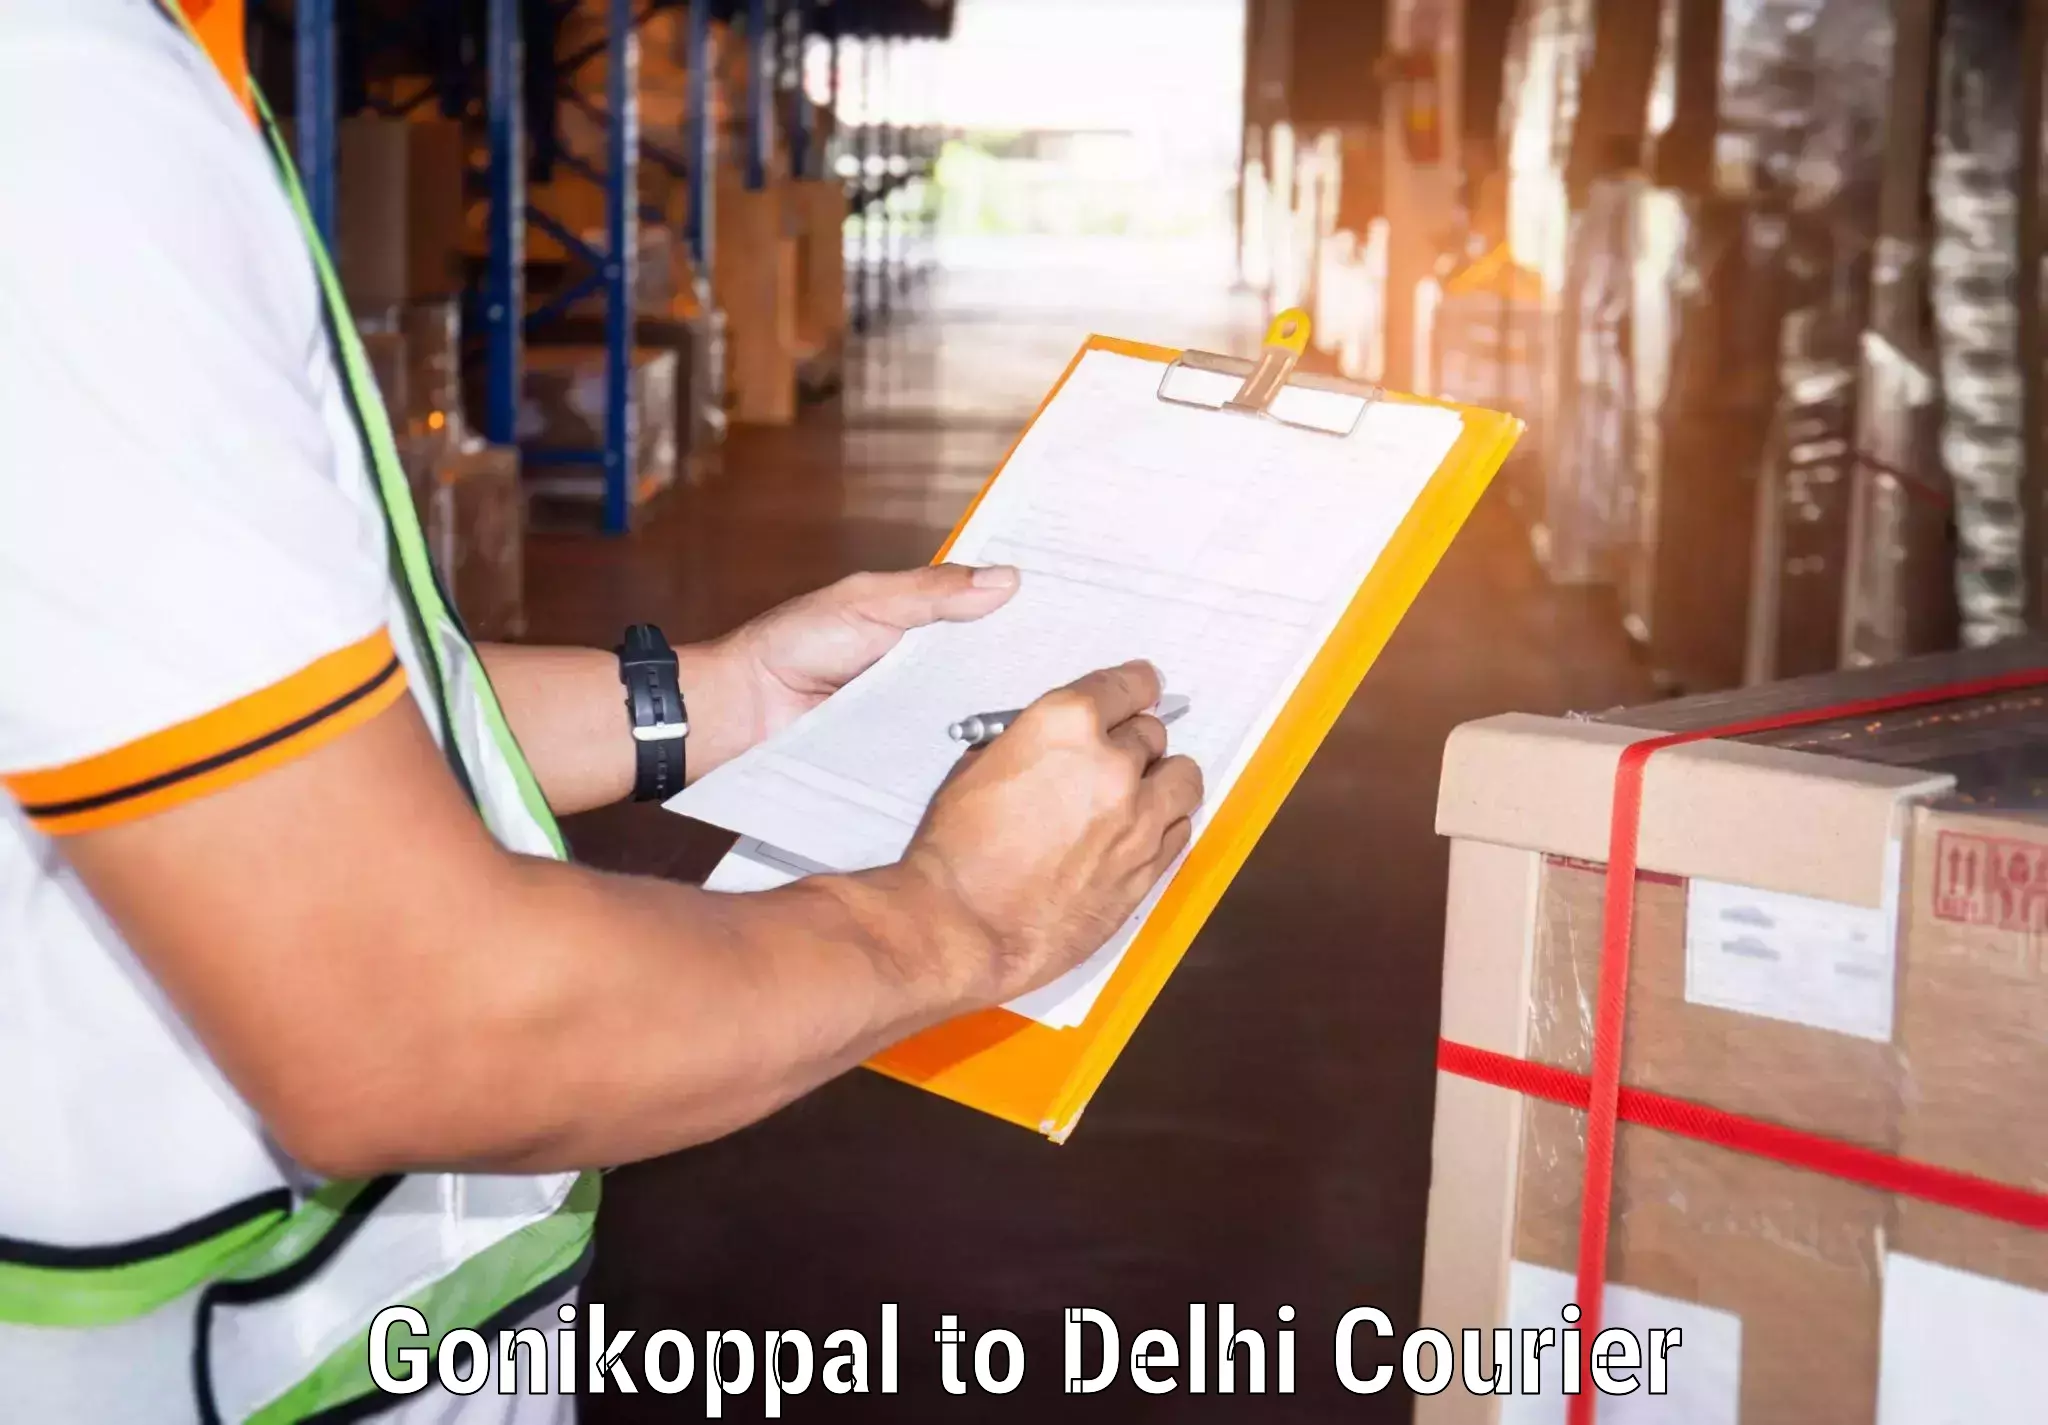 Global courier networks Gonikoppal to Jamia Millia Islamia New Delhi